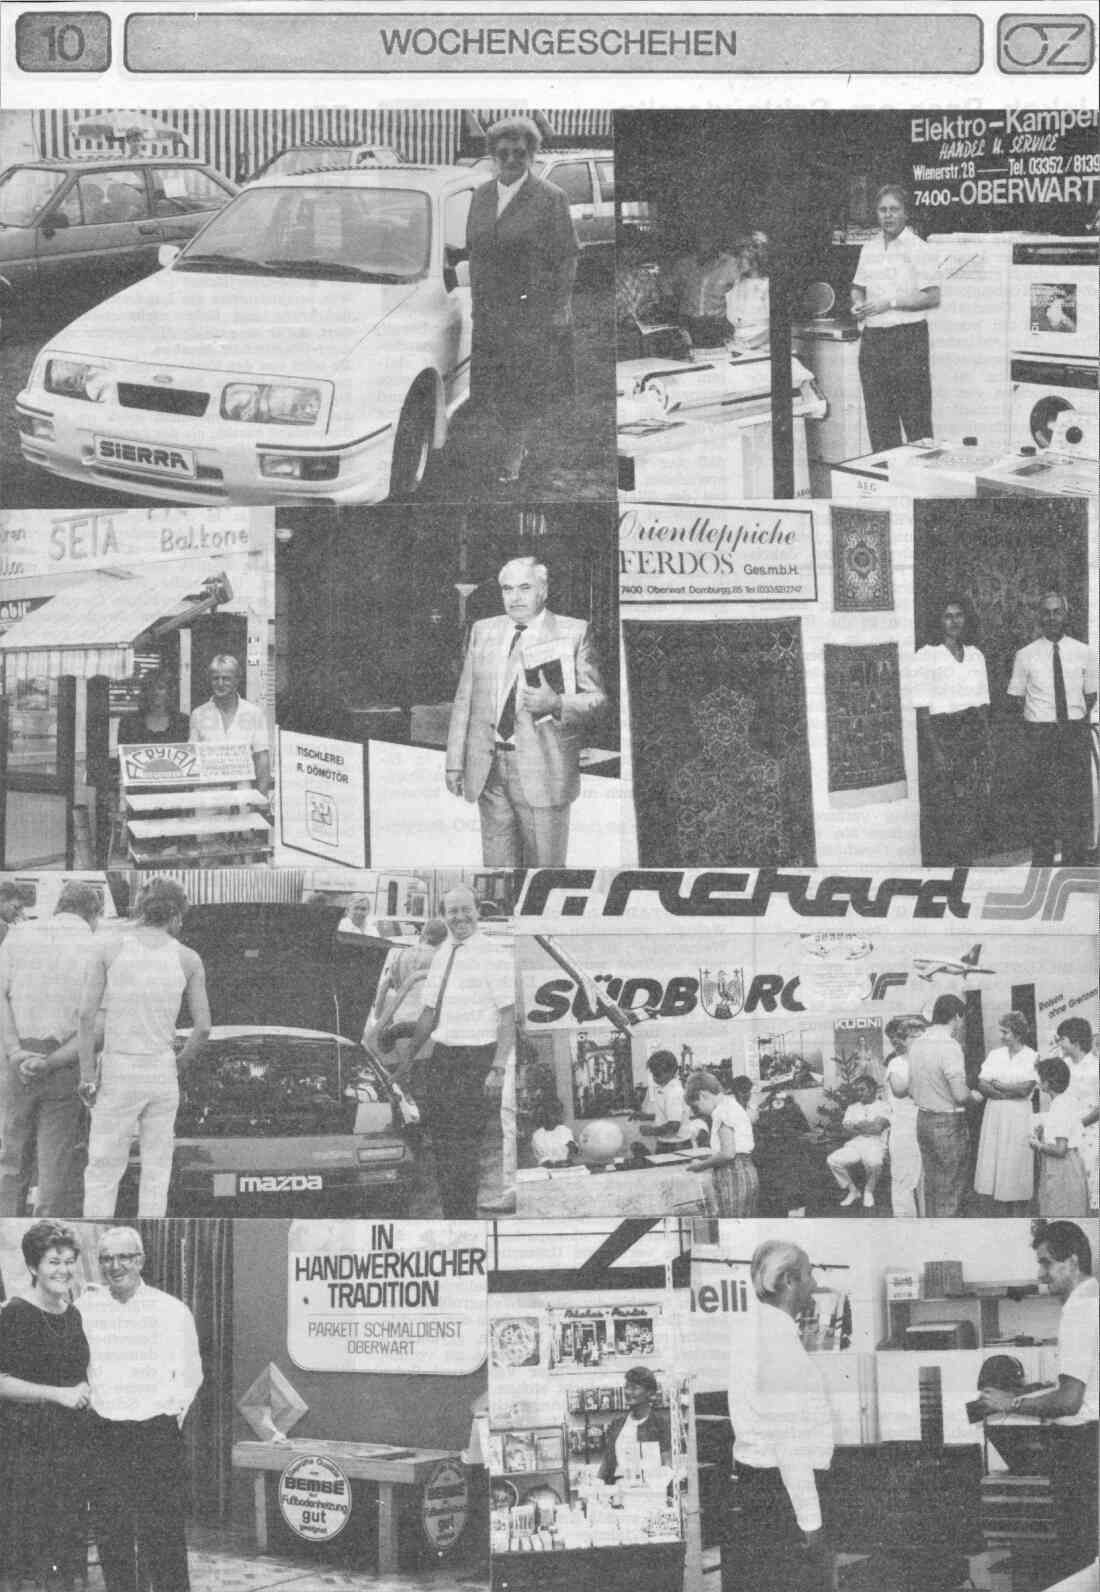 Bildseite in der OZ anlässlich der Inform 1986